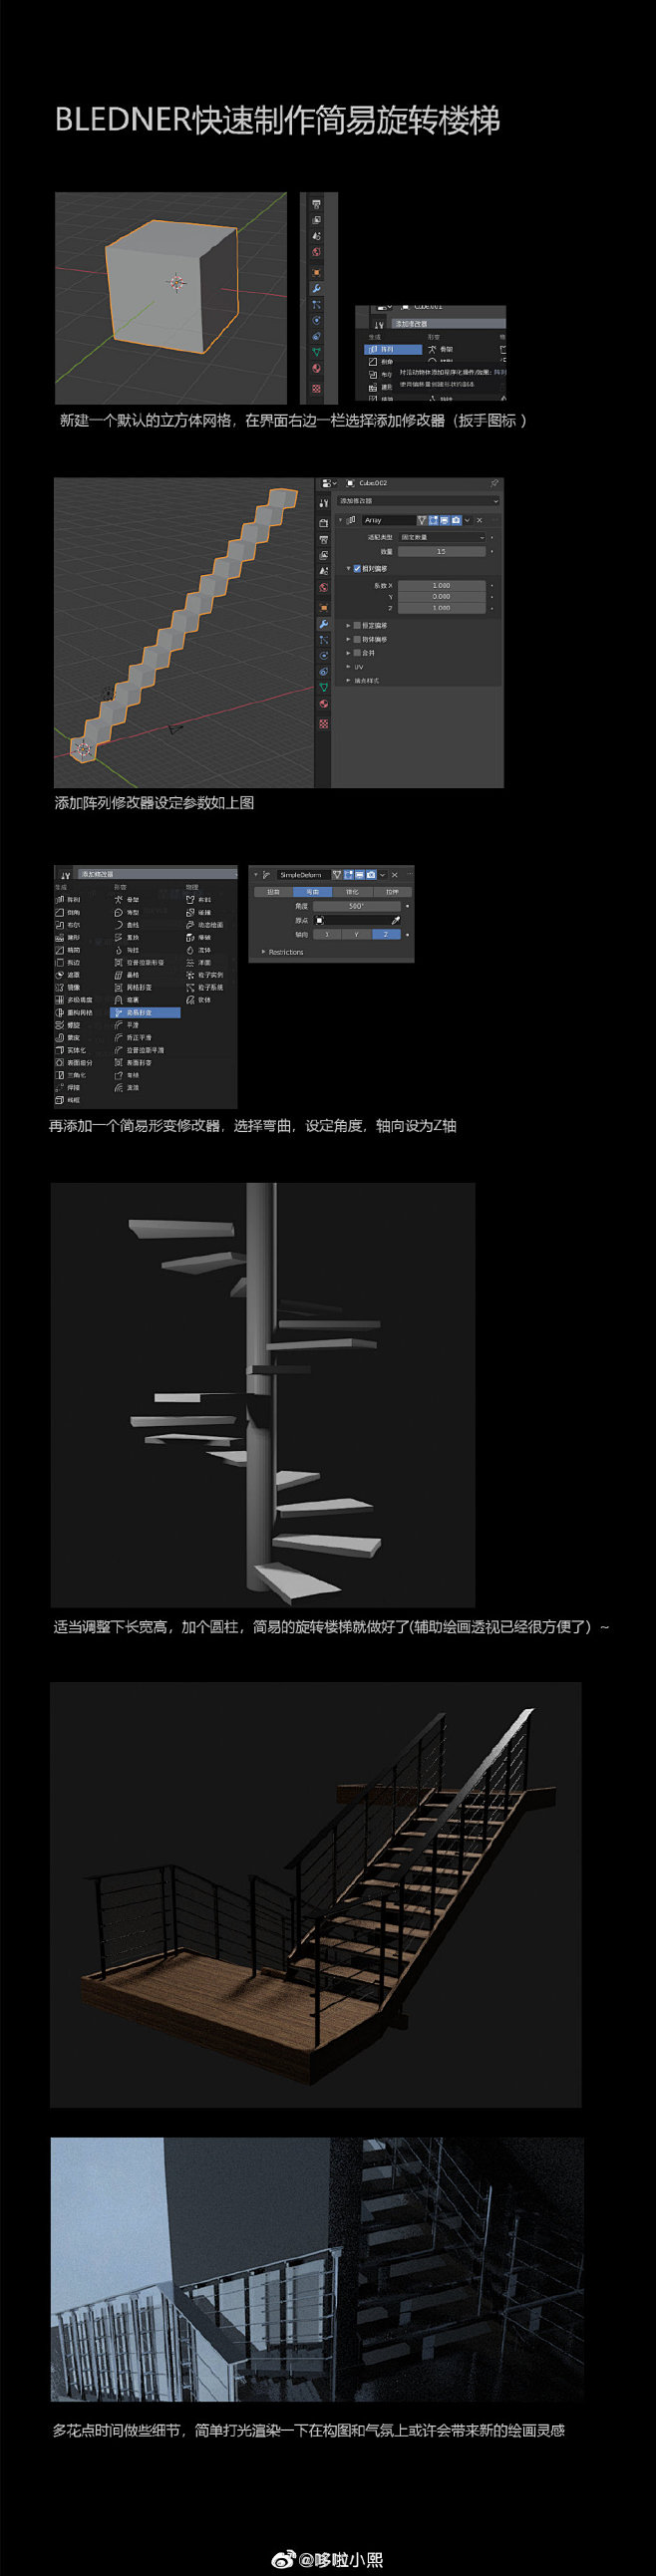 【Blender】简易旋转楼梯制作